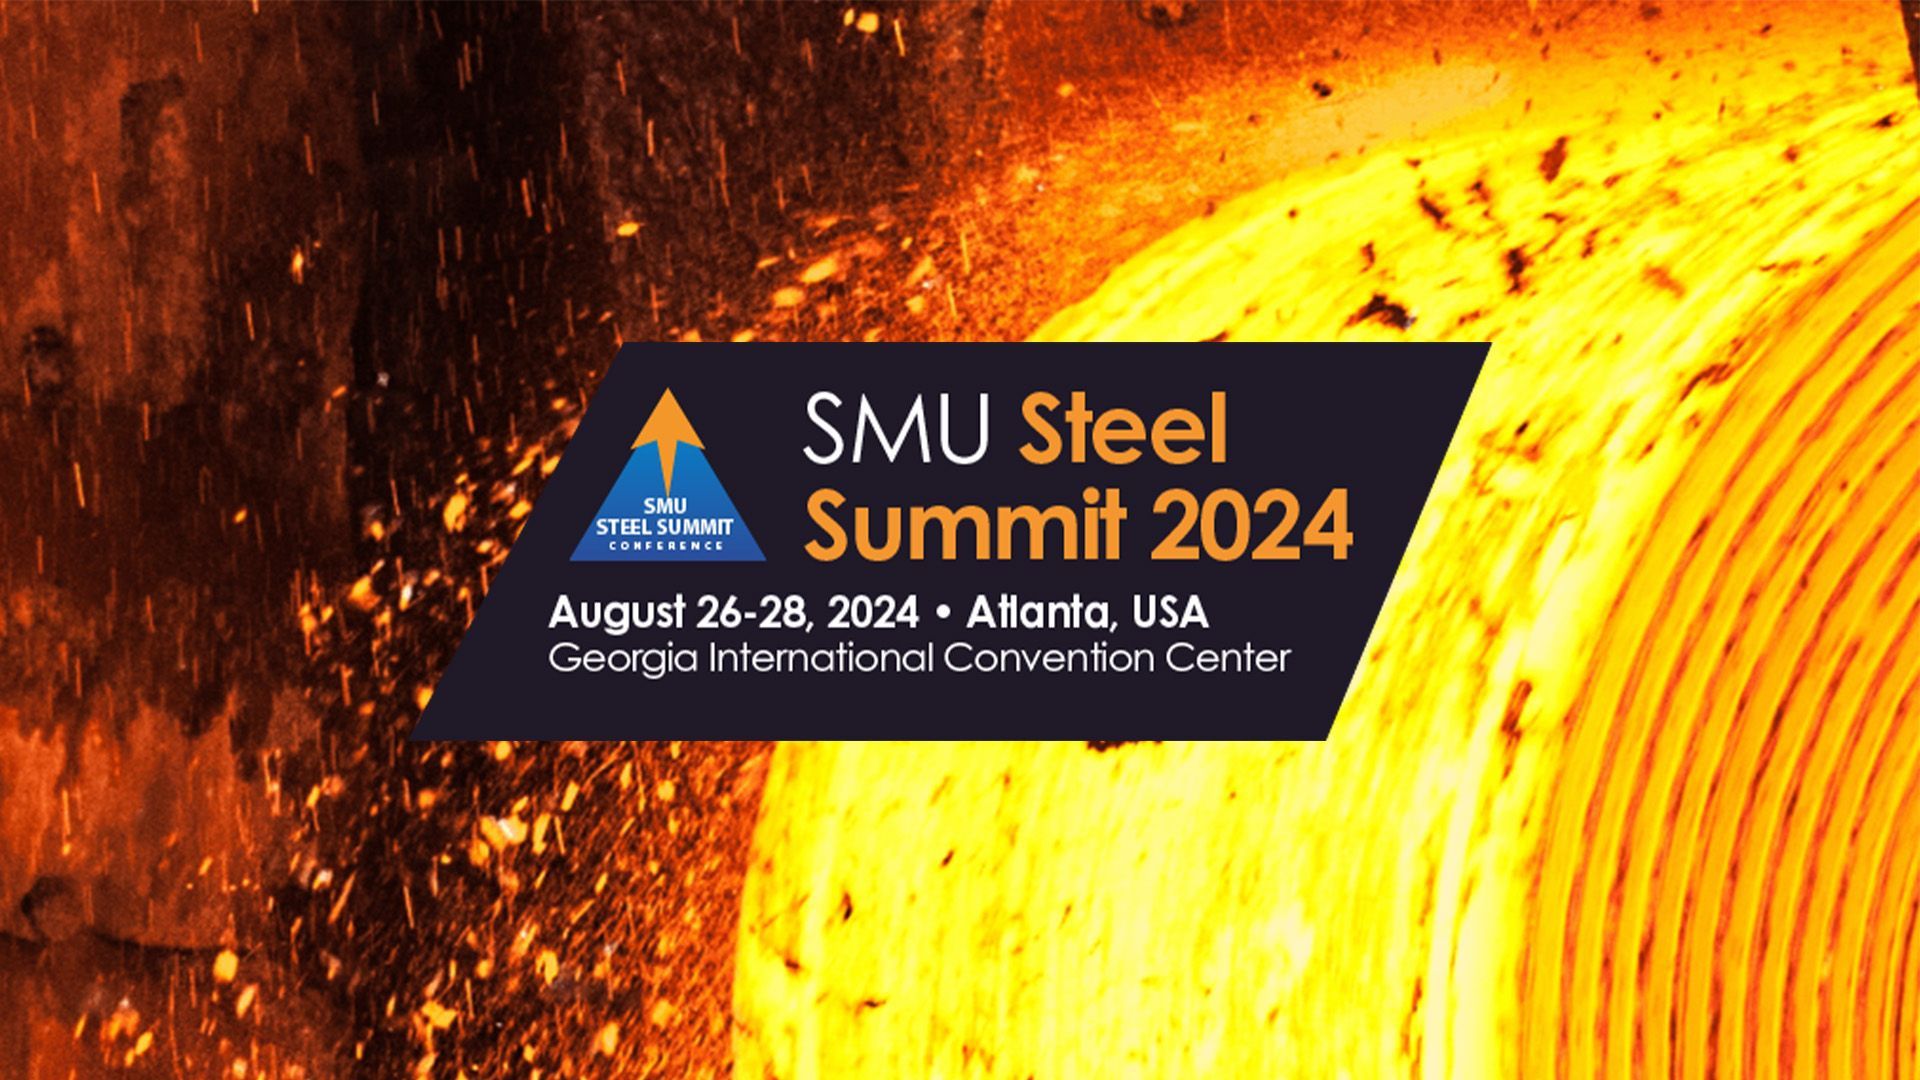 Fagor Arrasate event: Steel Summit